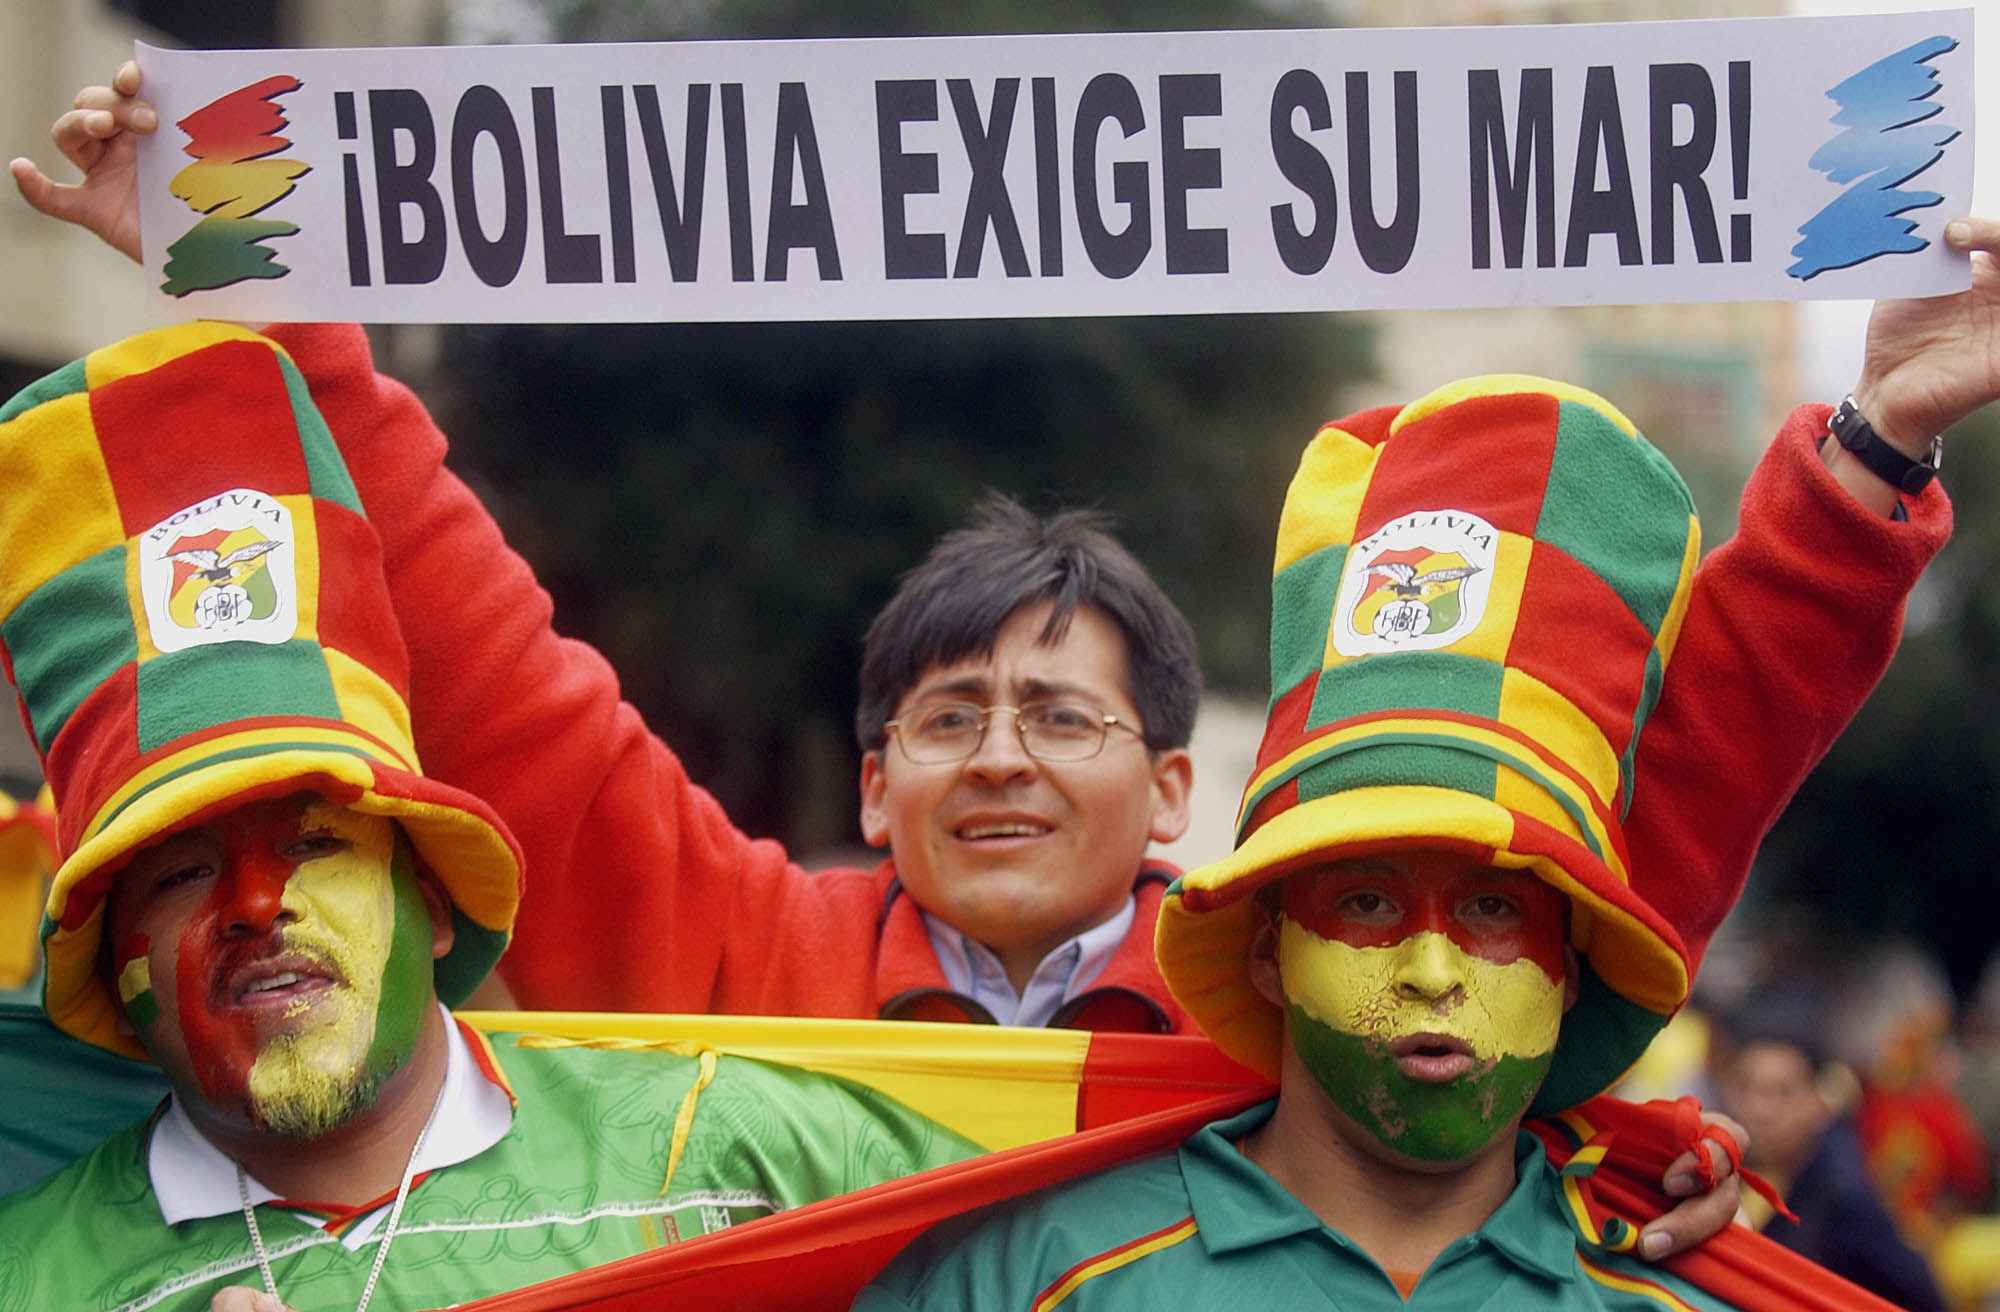 ¿Cómo fue que Bolivia perdió su única salida al mar? La historia de su rivalidad con Chile